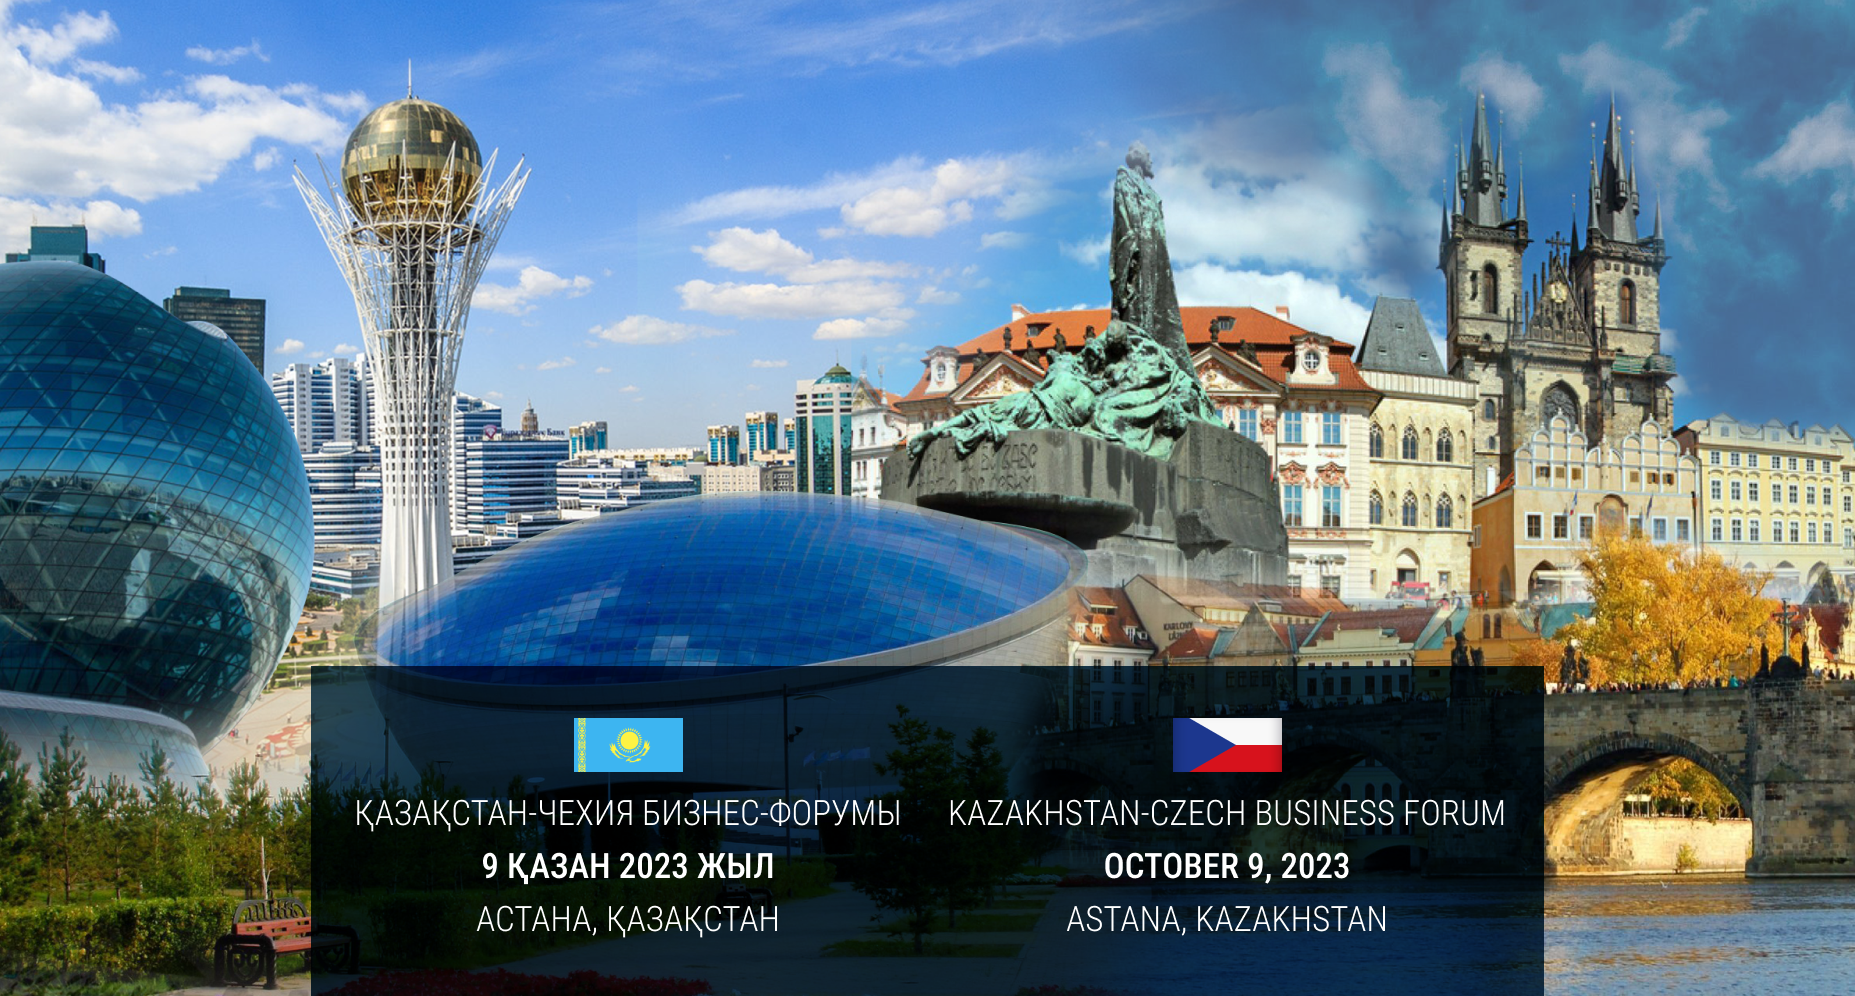 Kazakhstan-Czech Business Forum